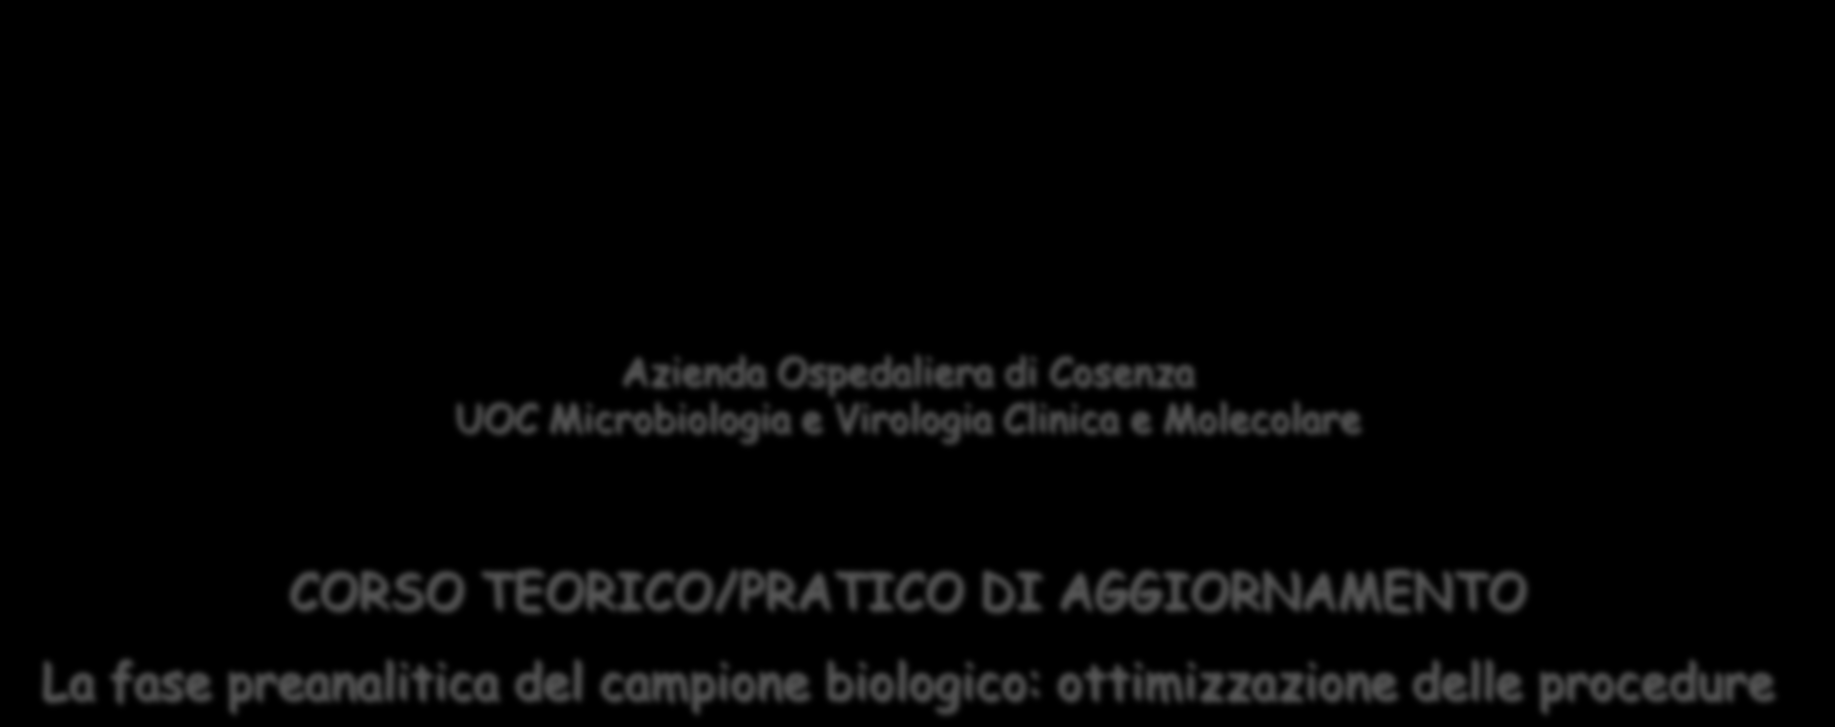 Azienda Ospedaliera di Cosenza UOC Microbiologia e Virologia Clinica e